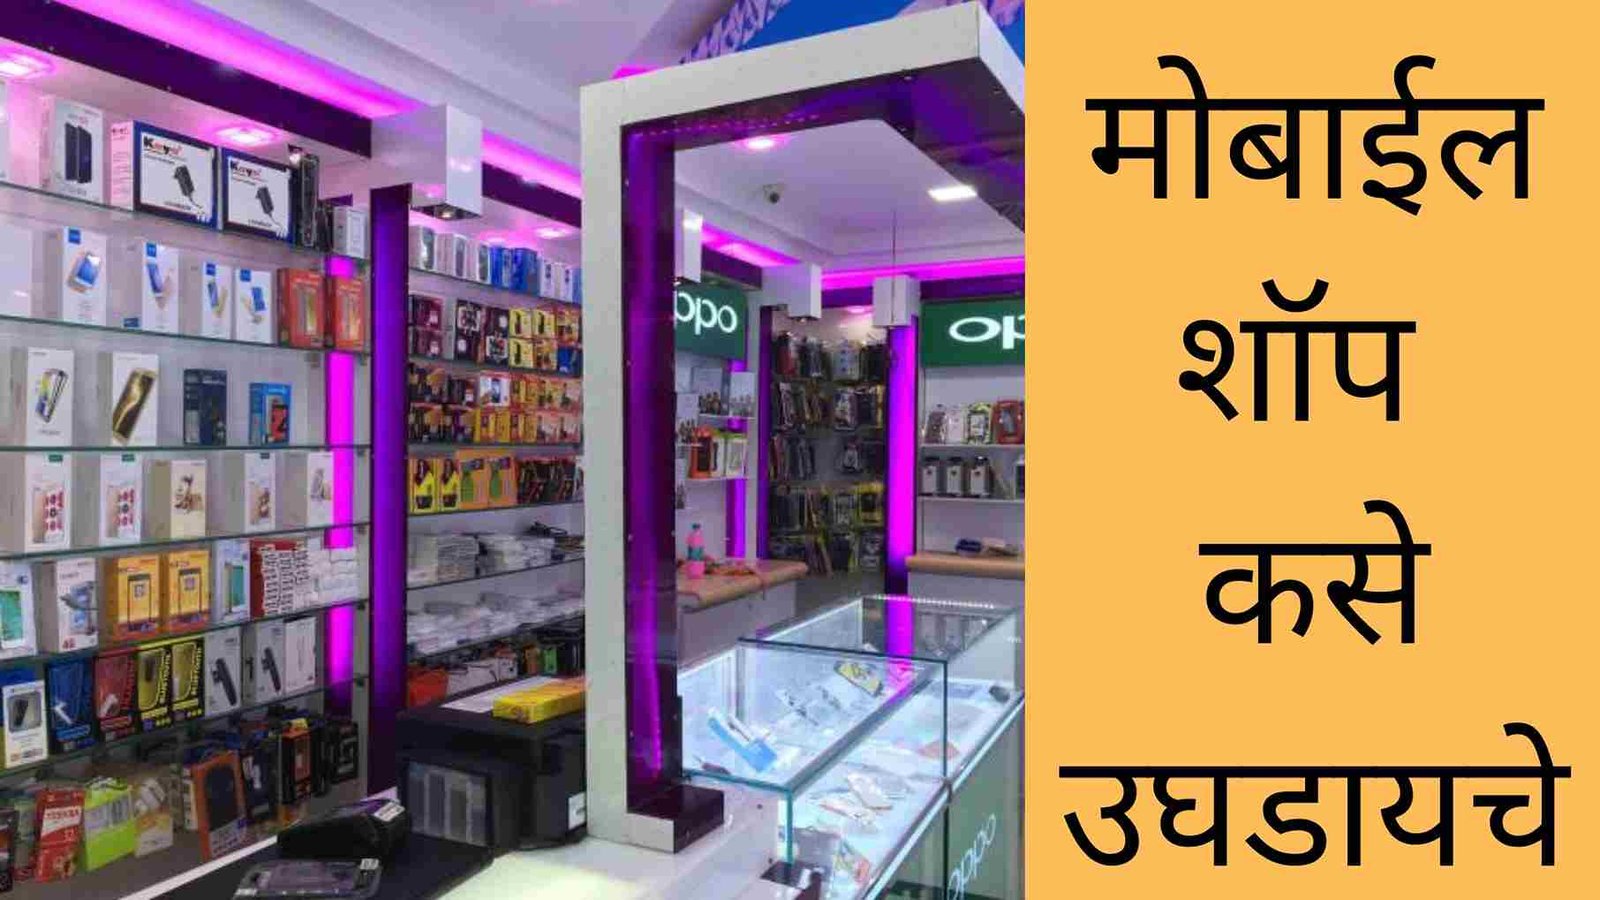 मोबाईल शॉप कसे उघडायचे, संपूर्ण माहिती | Mobile Shop Business Ideas In Marathi